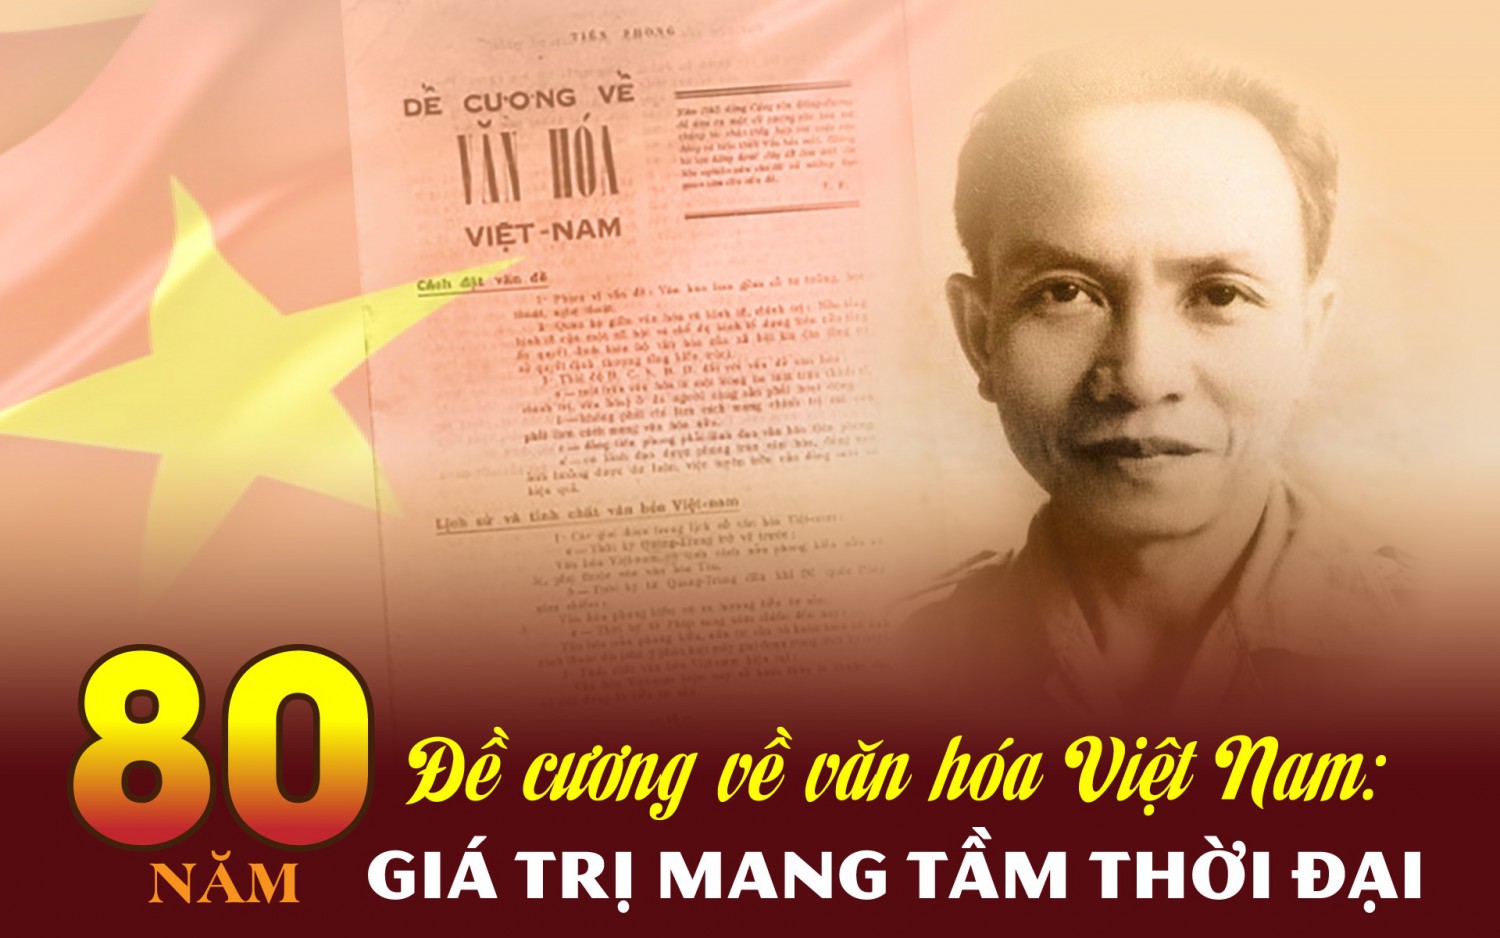 Vận dụng, phát huy giá trị của “Đề cương về văn hóa Việt Nam” tạo động lực phát triển kinh tế, văn hóa, xã hội của tỉnh Quảng Trị hiện nay